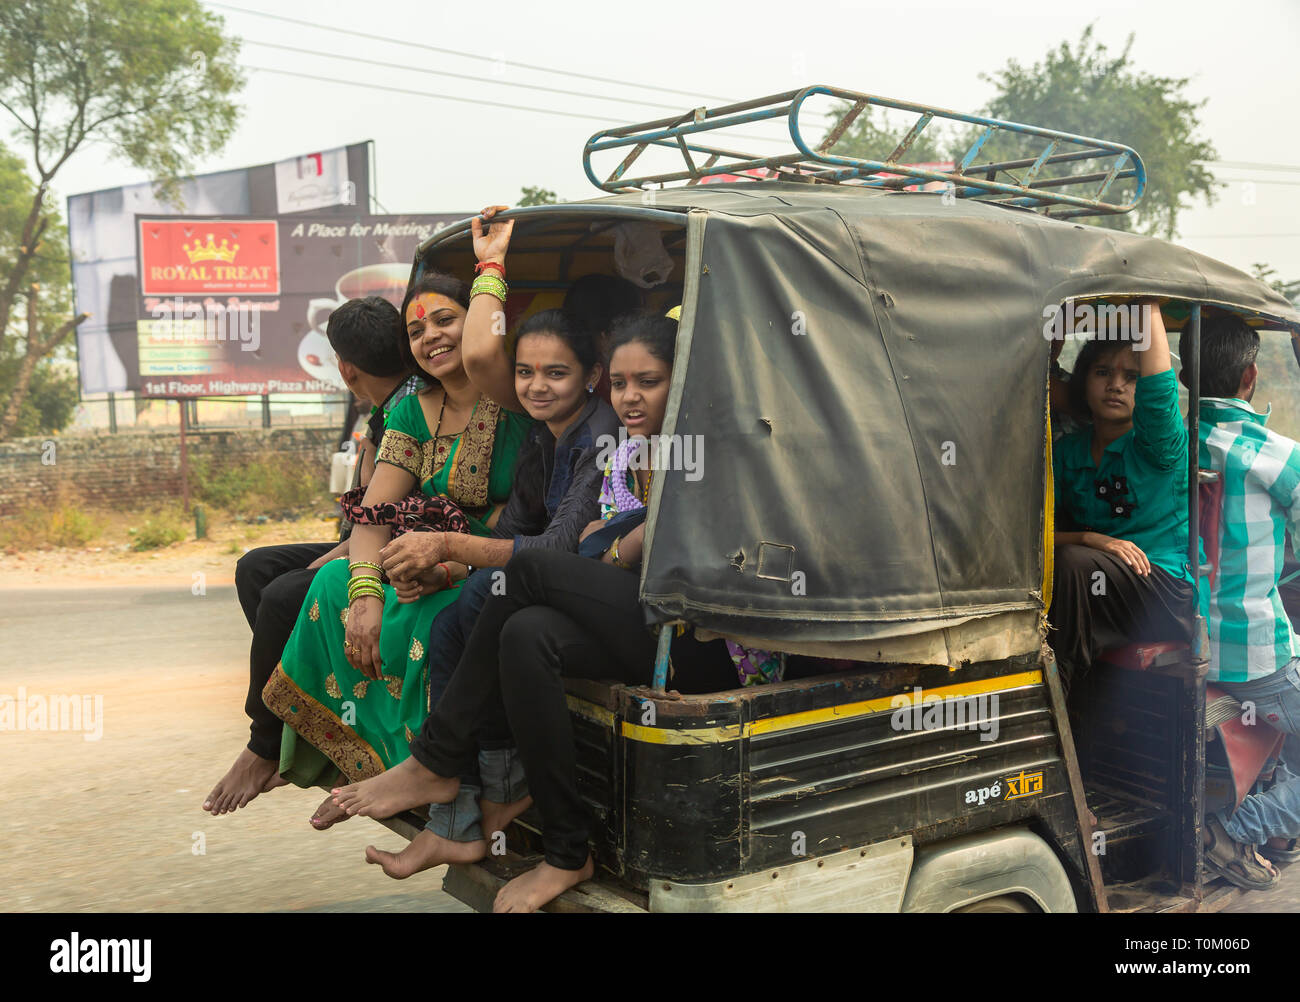 AGRA, INDIEN - November 16, 2012: Verkehr auf den Straßen von Indien. Große indische Familien reisen in ein kleines Auto. Indische Menschen und ihre bunten Kult Stockfoto